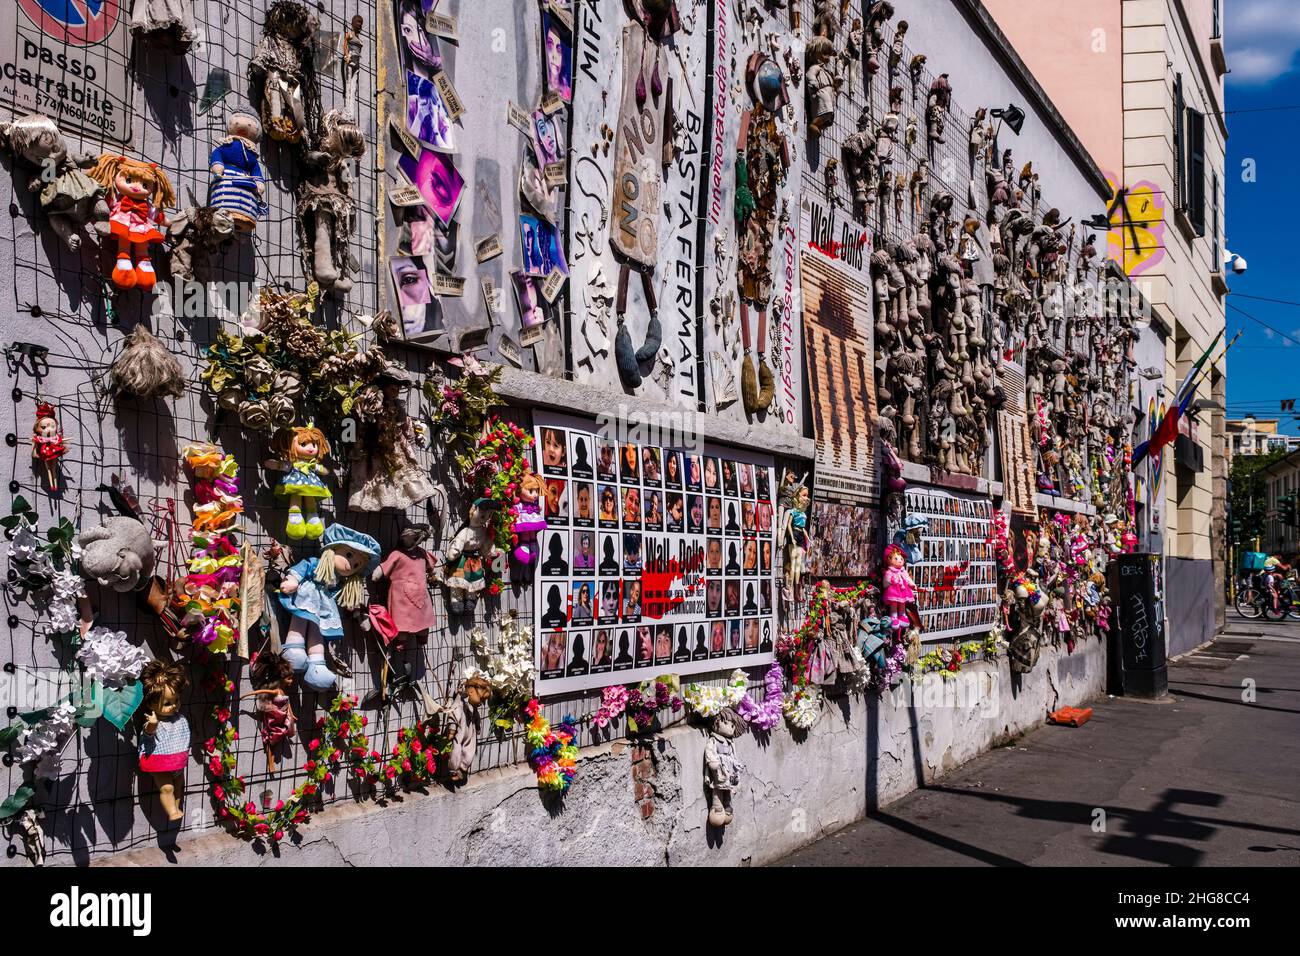 El Muro de las Muñecas, il Muro delle Bambole, una instalación de arte, que aumenta la conciencia de la violencia contra las mujeres. Foto de stock